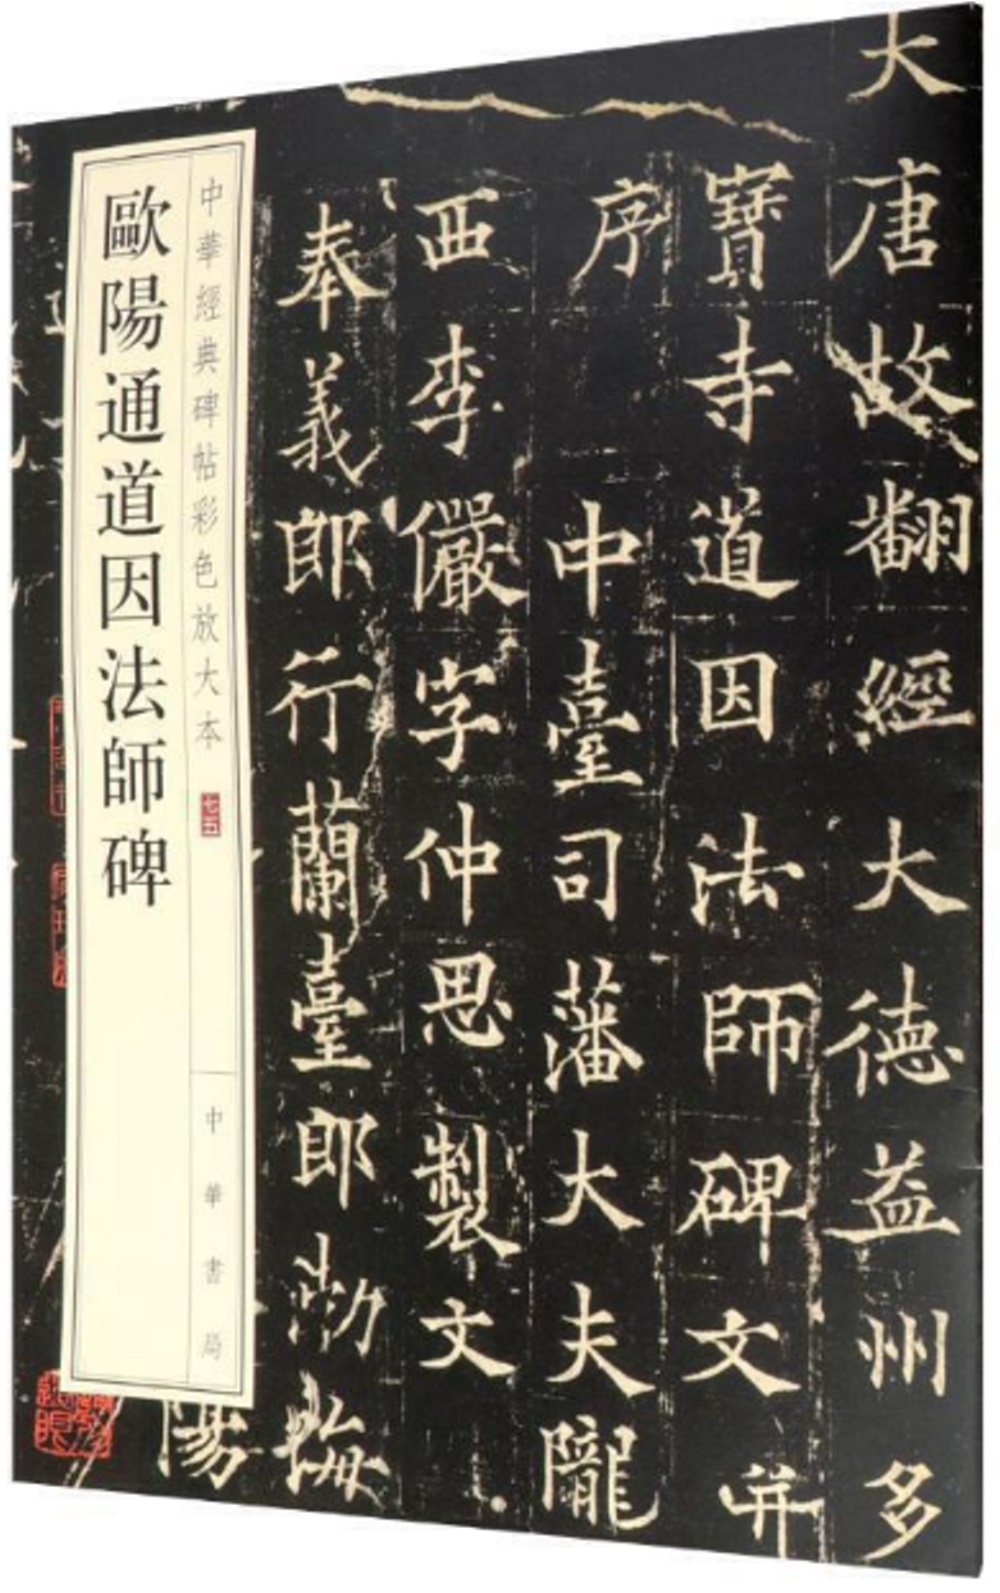 中華經典碑帖彩色放大本：歐陽通道因法師碑